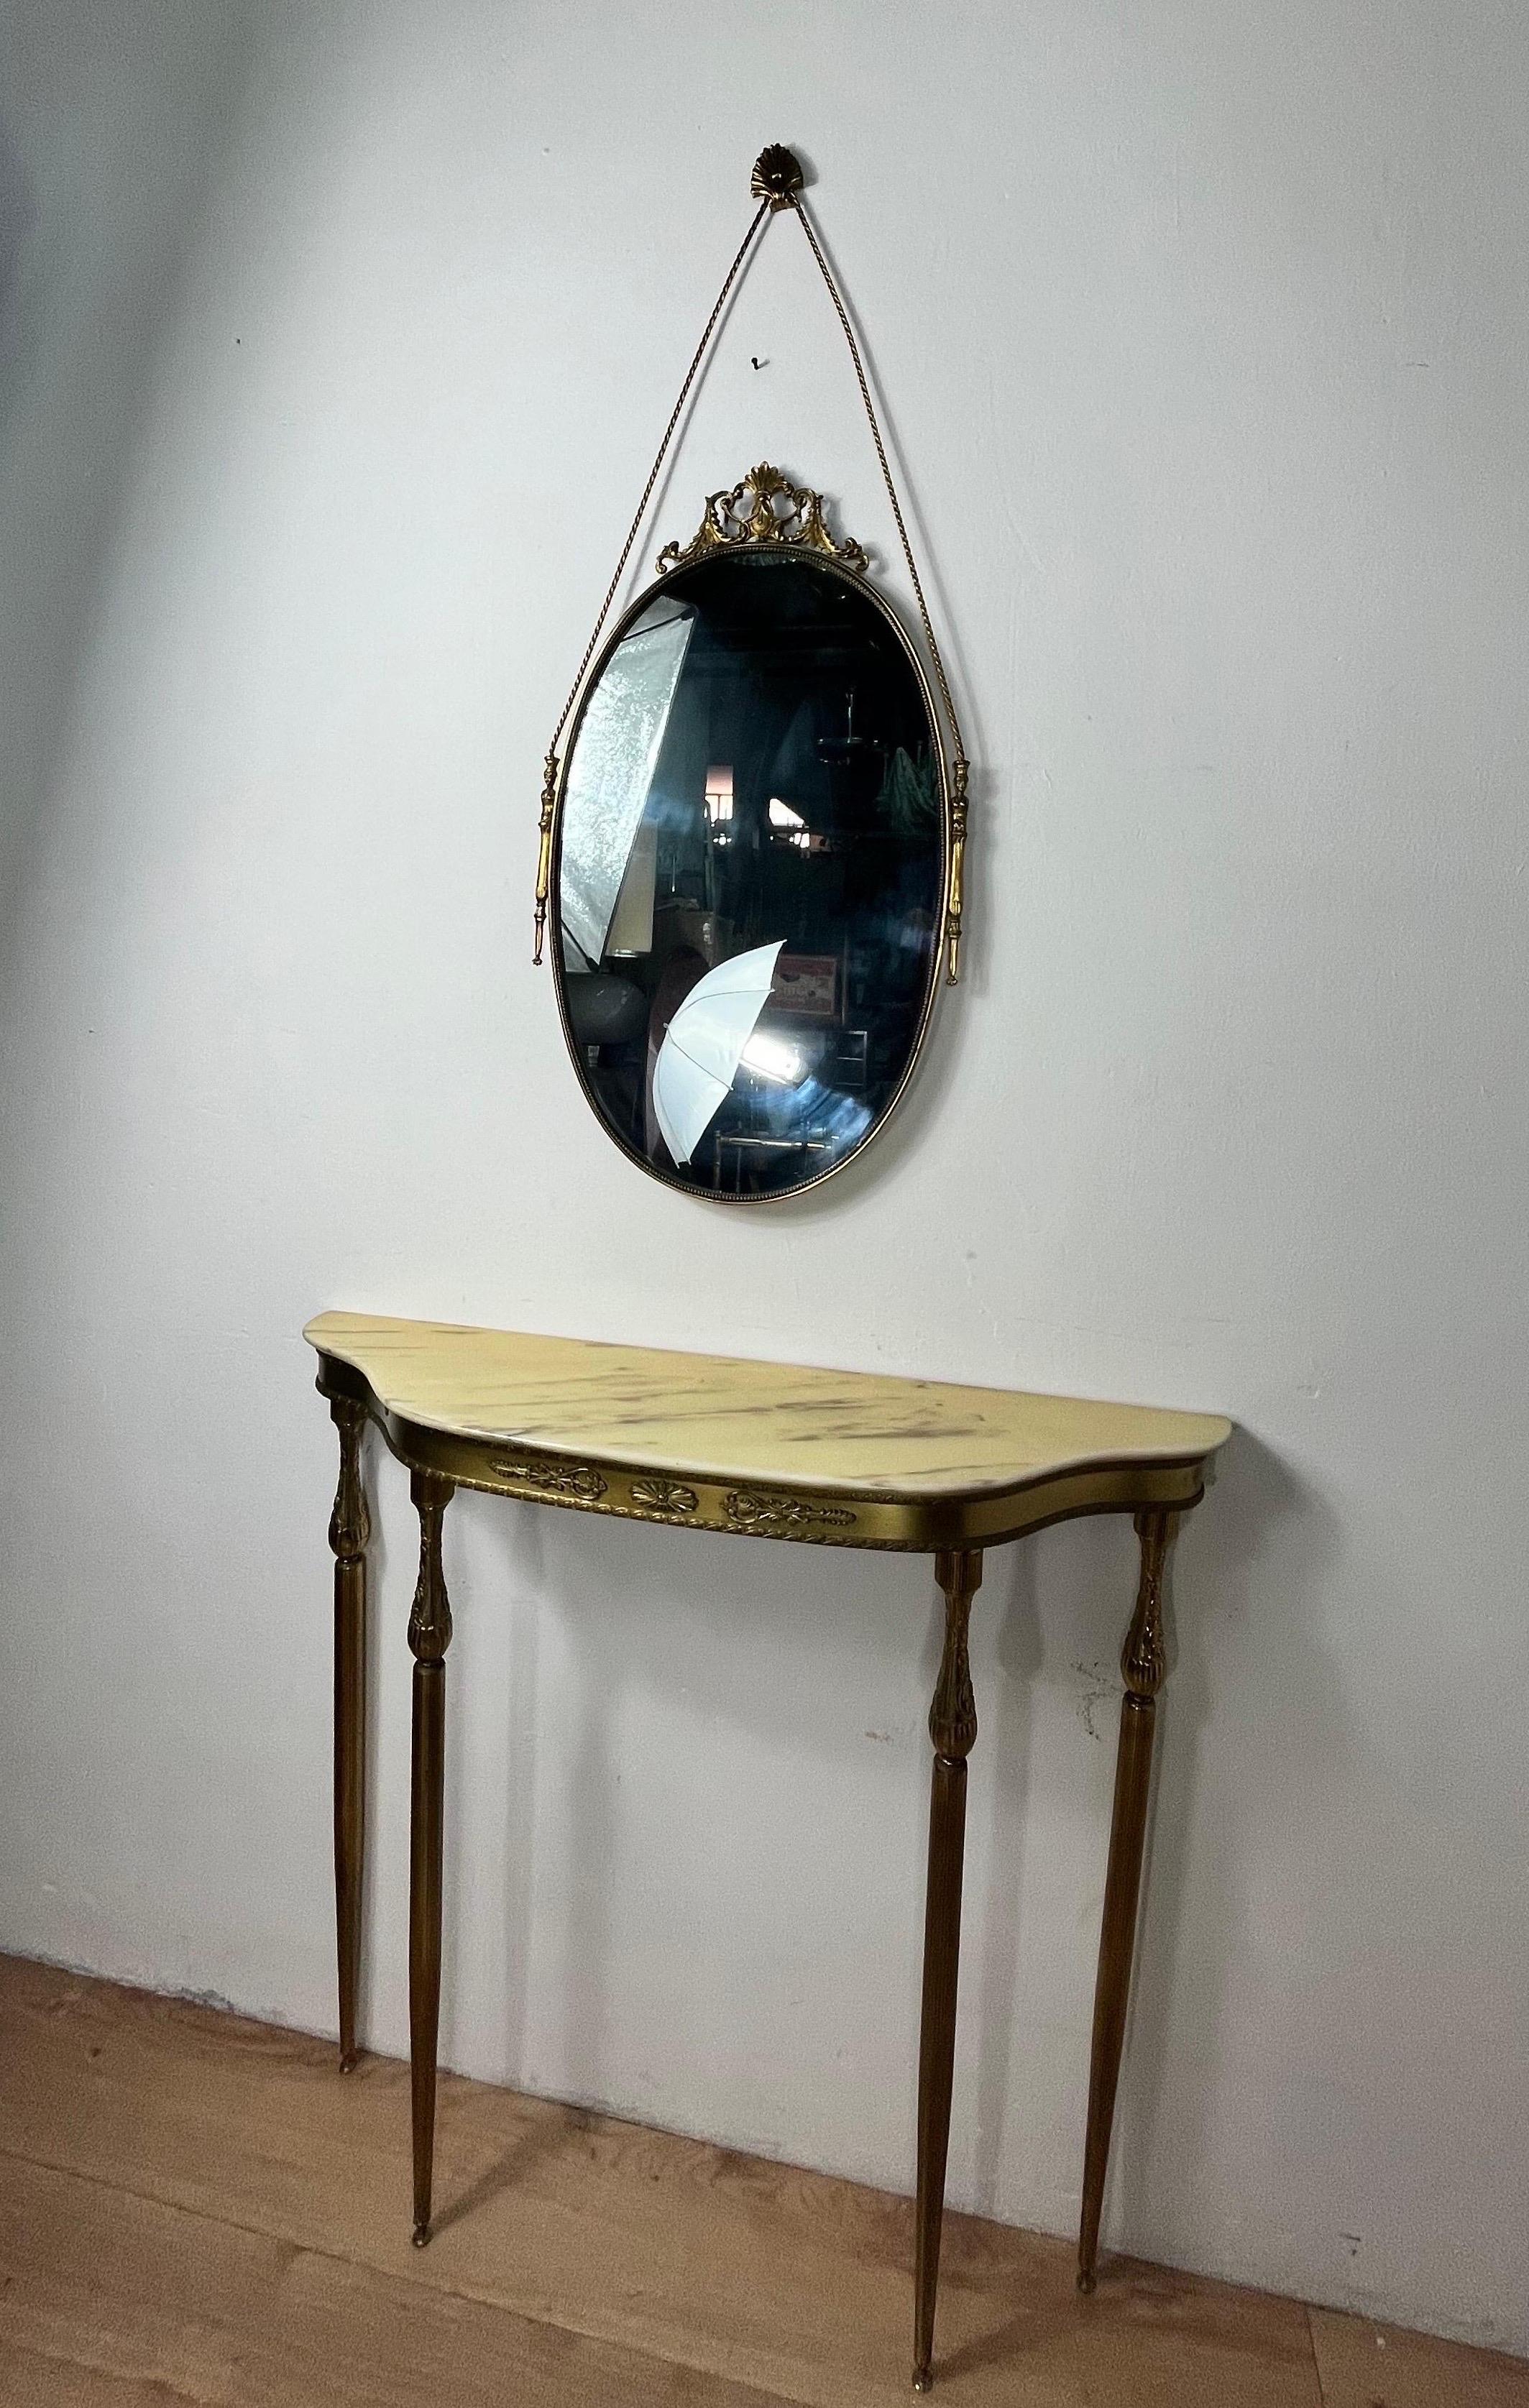 Très beau miroir avec console en laiton et surface en marbre de style italien. Les dimensions de la console sont les suivantes : 34,25 de longueur, 37,00 de largeur et 9,84 de profondeur. (pouces) 